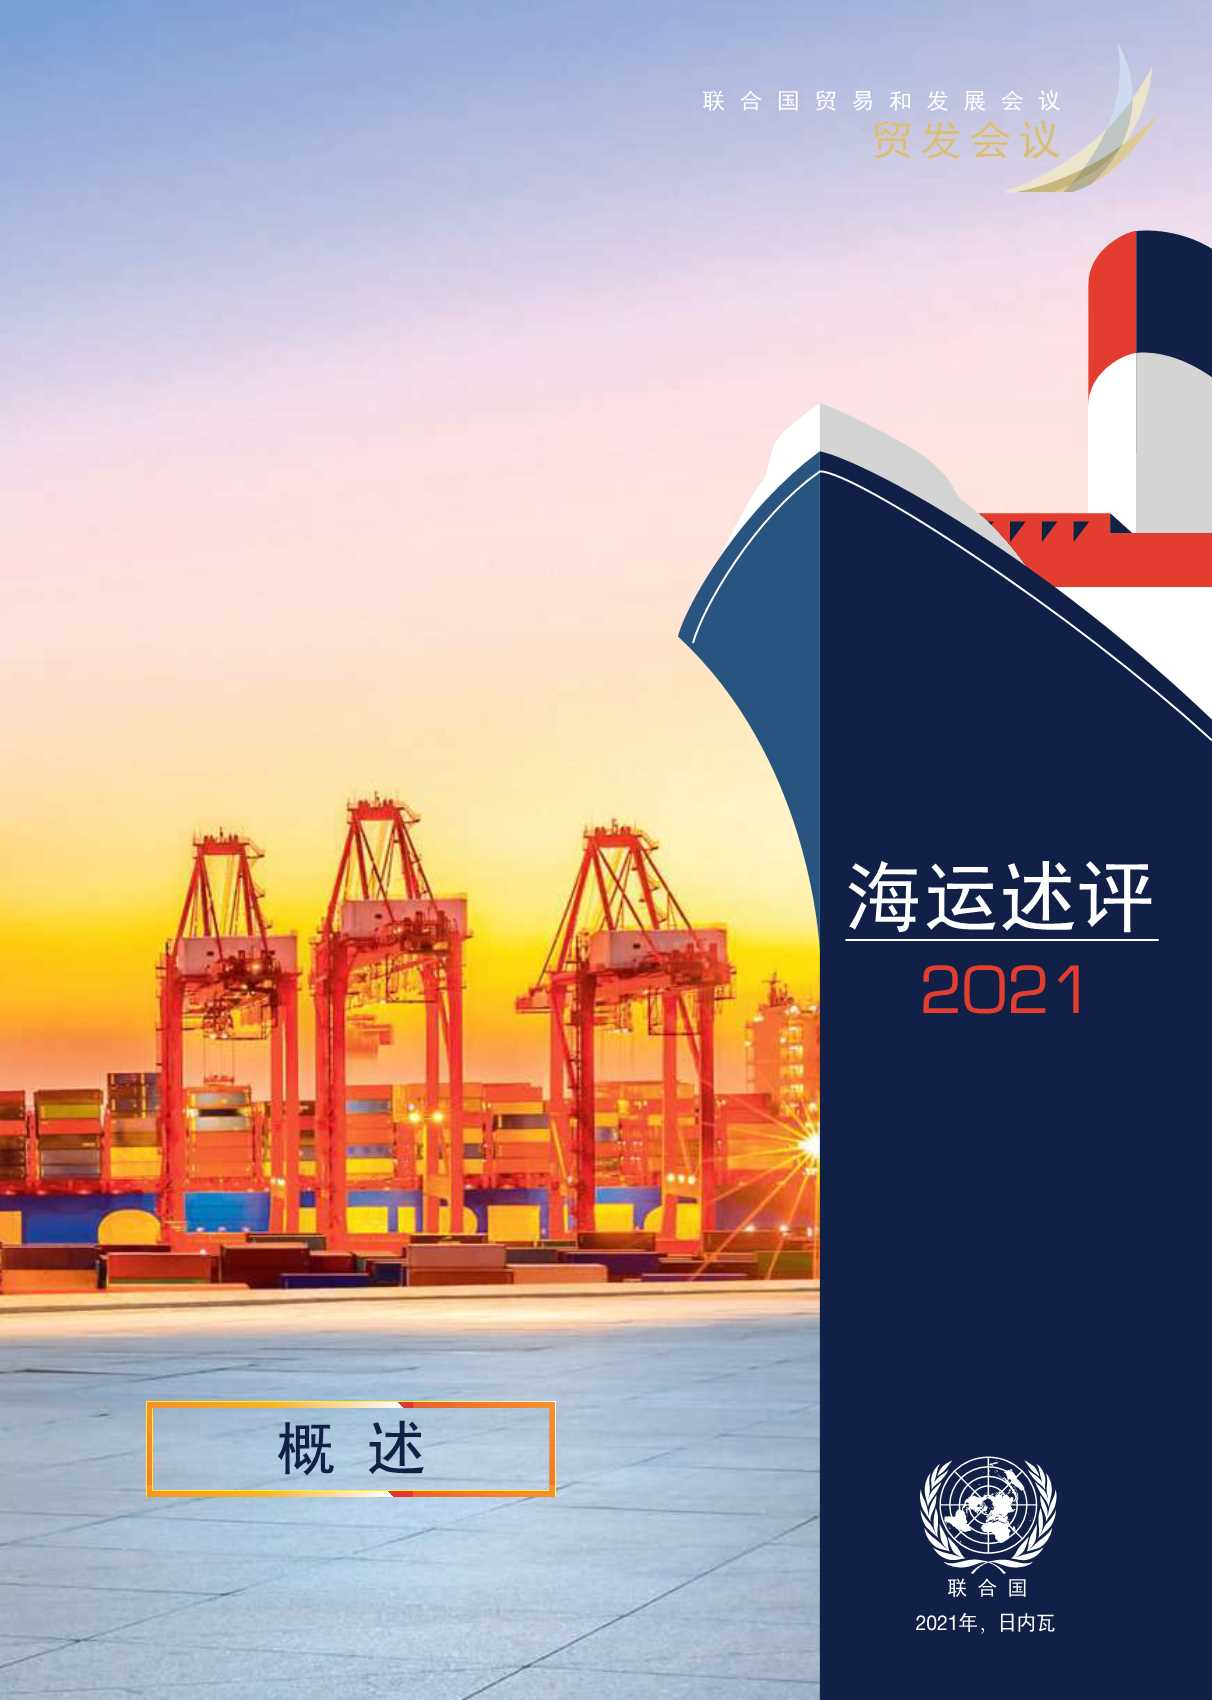 联合国-2021海运评述-2021.11-24页